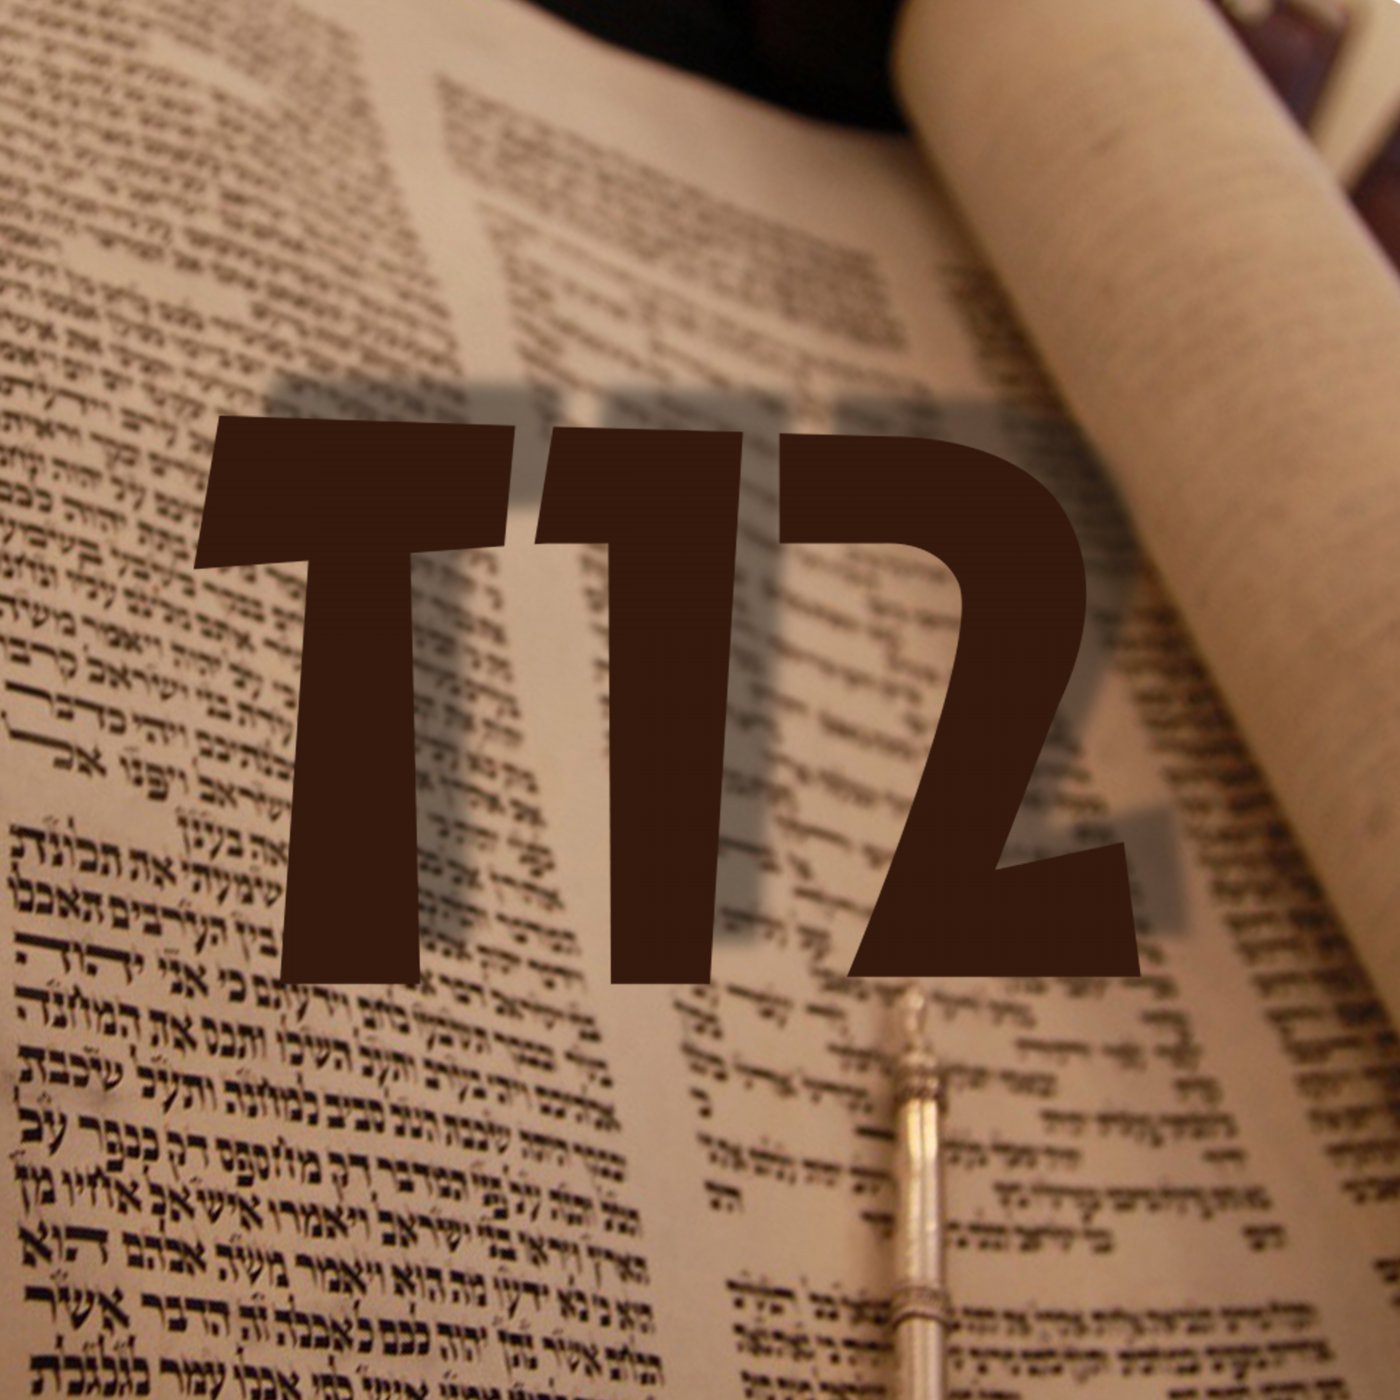 Smot hetiszakasz „Az első zsidóellenes hang”